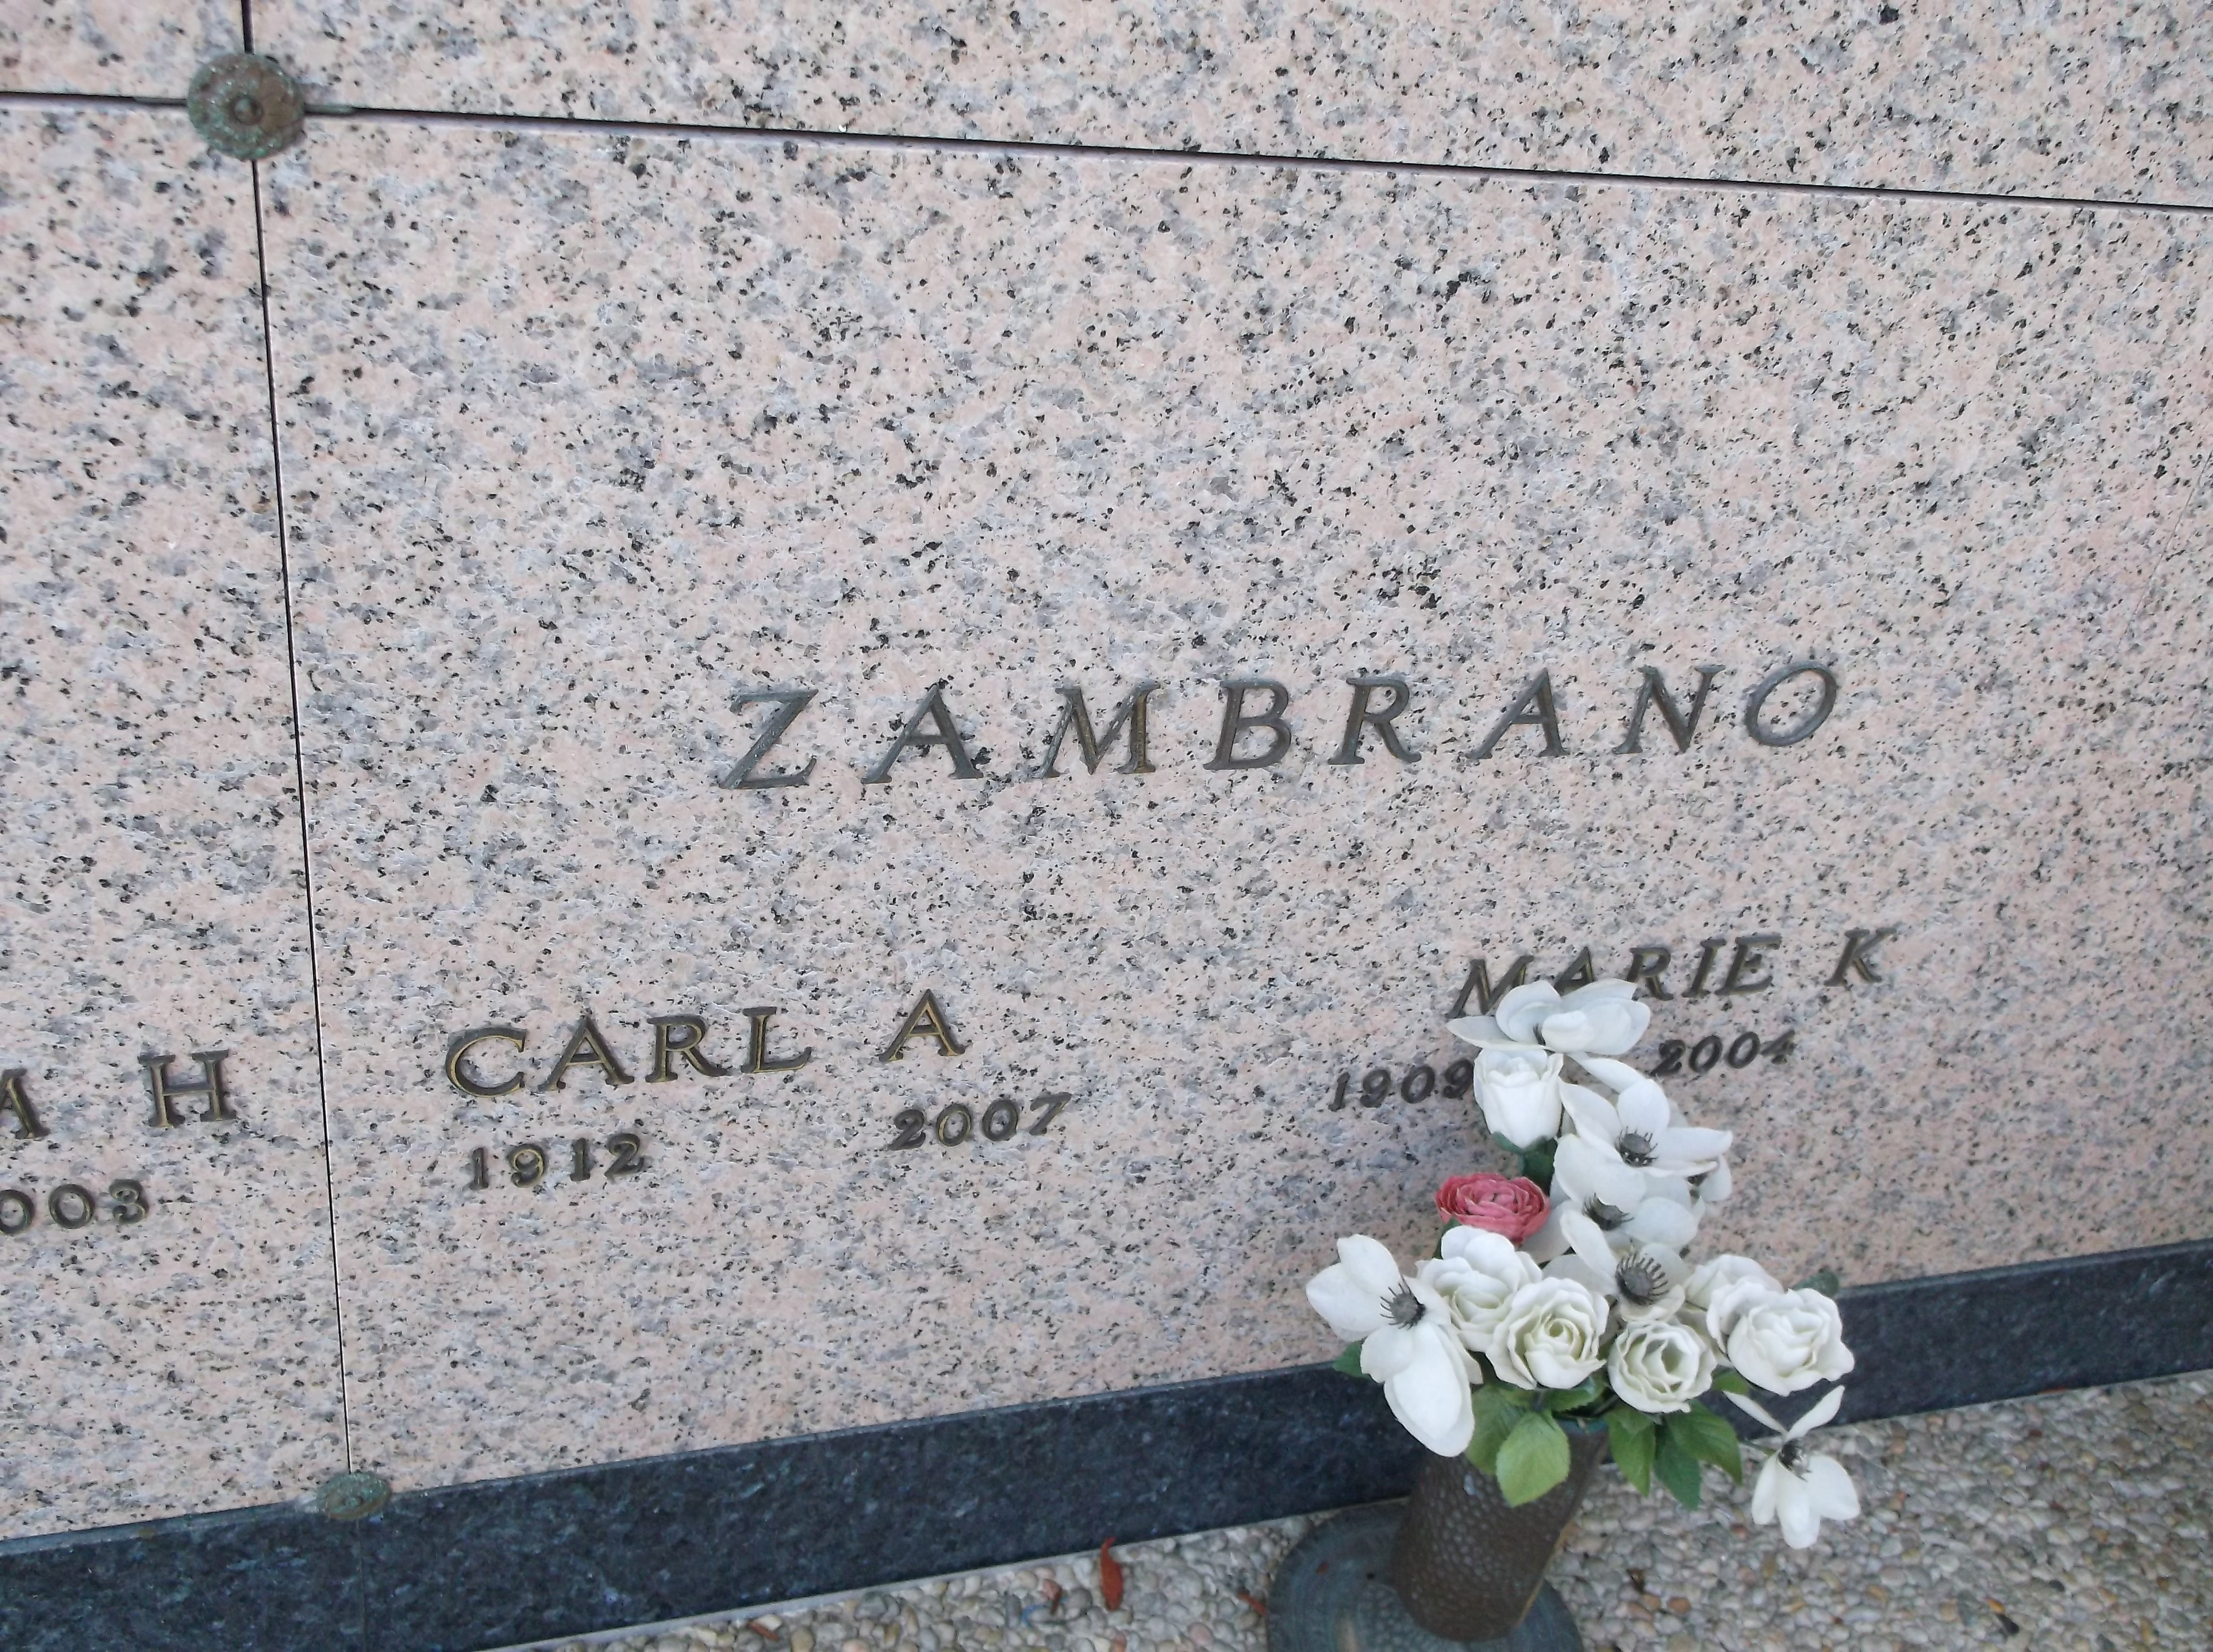 Carl A Zambrano